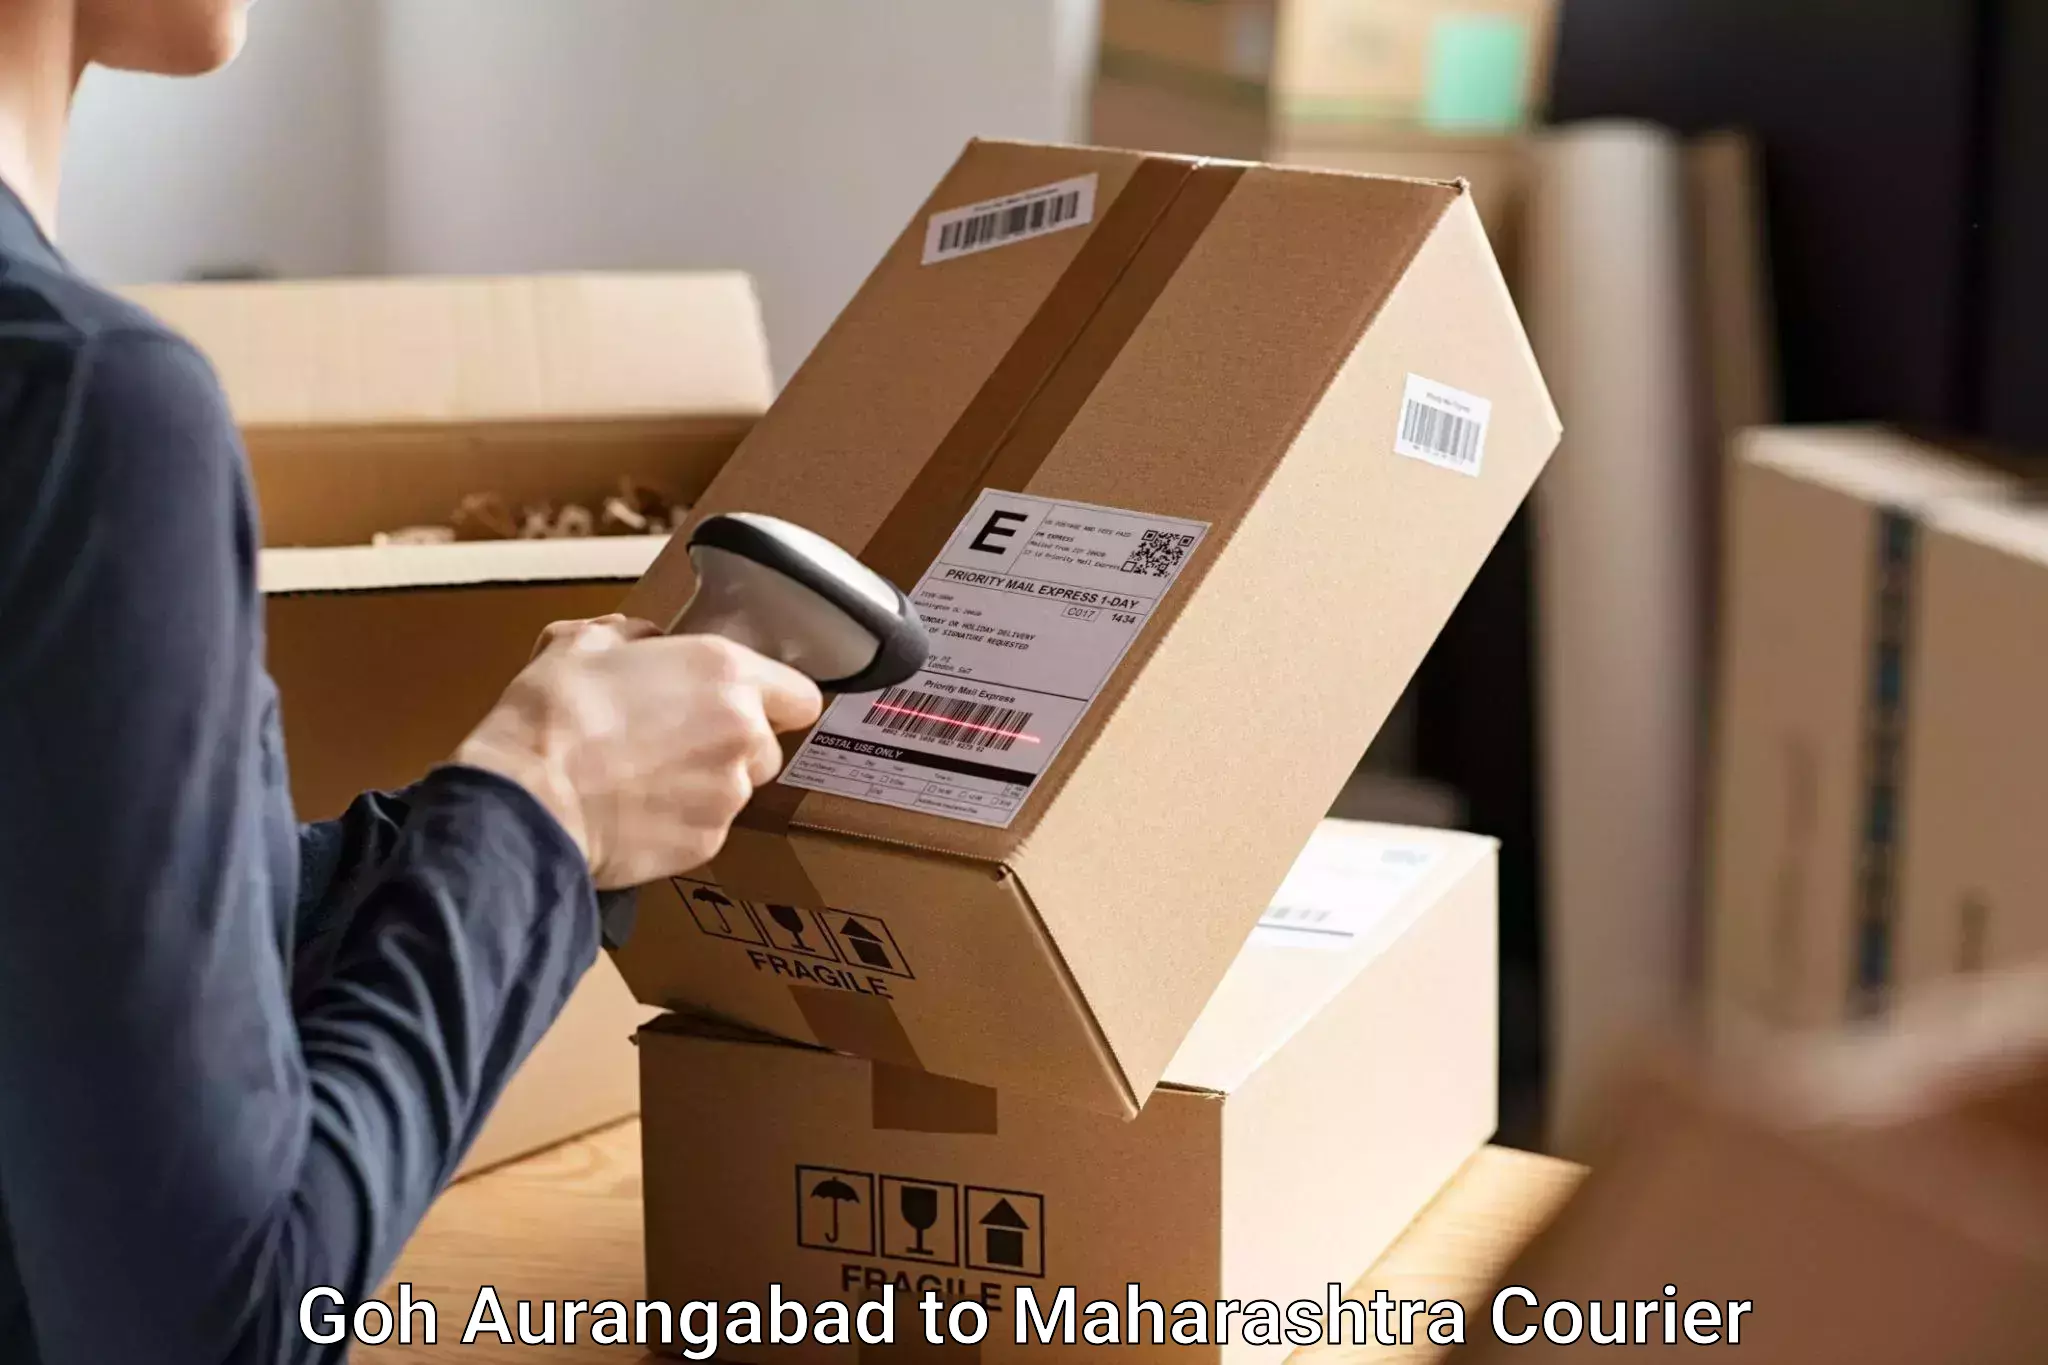 Baggage transport estimate Goh Aurangabad to Maharashtra